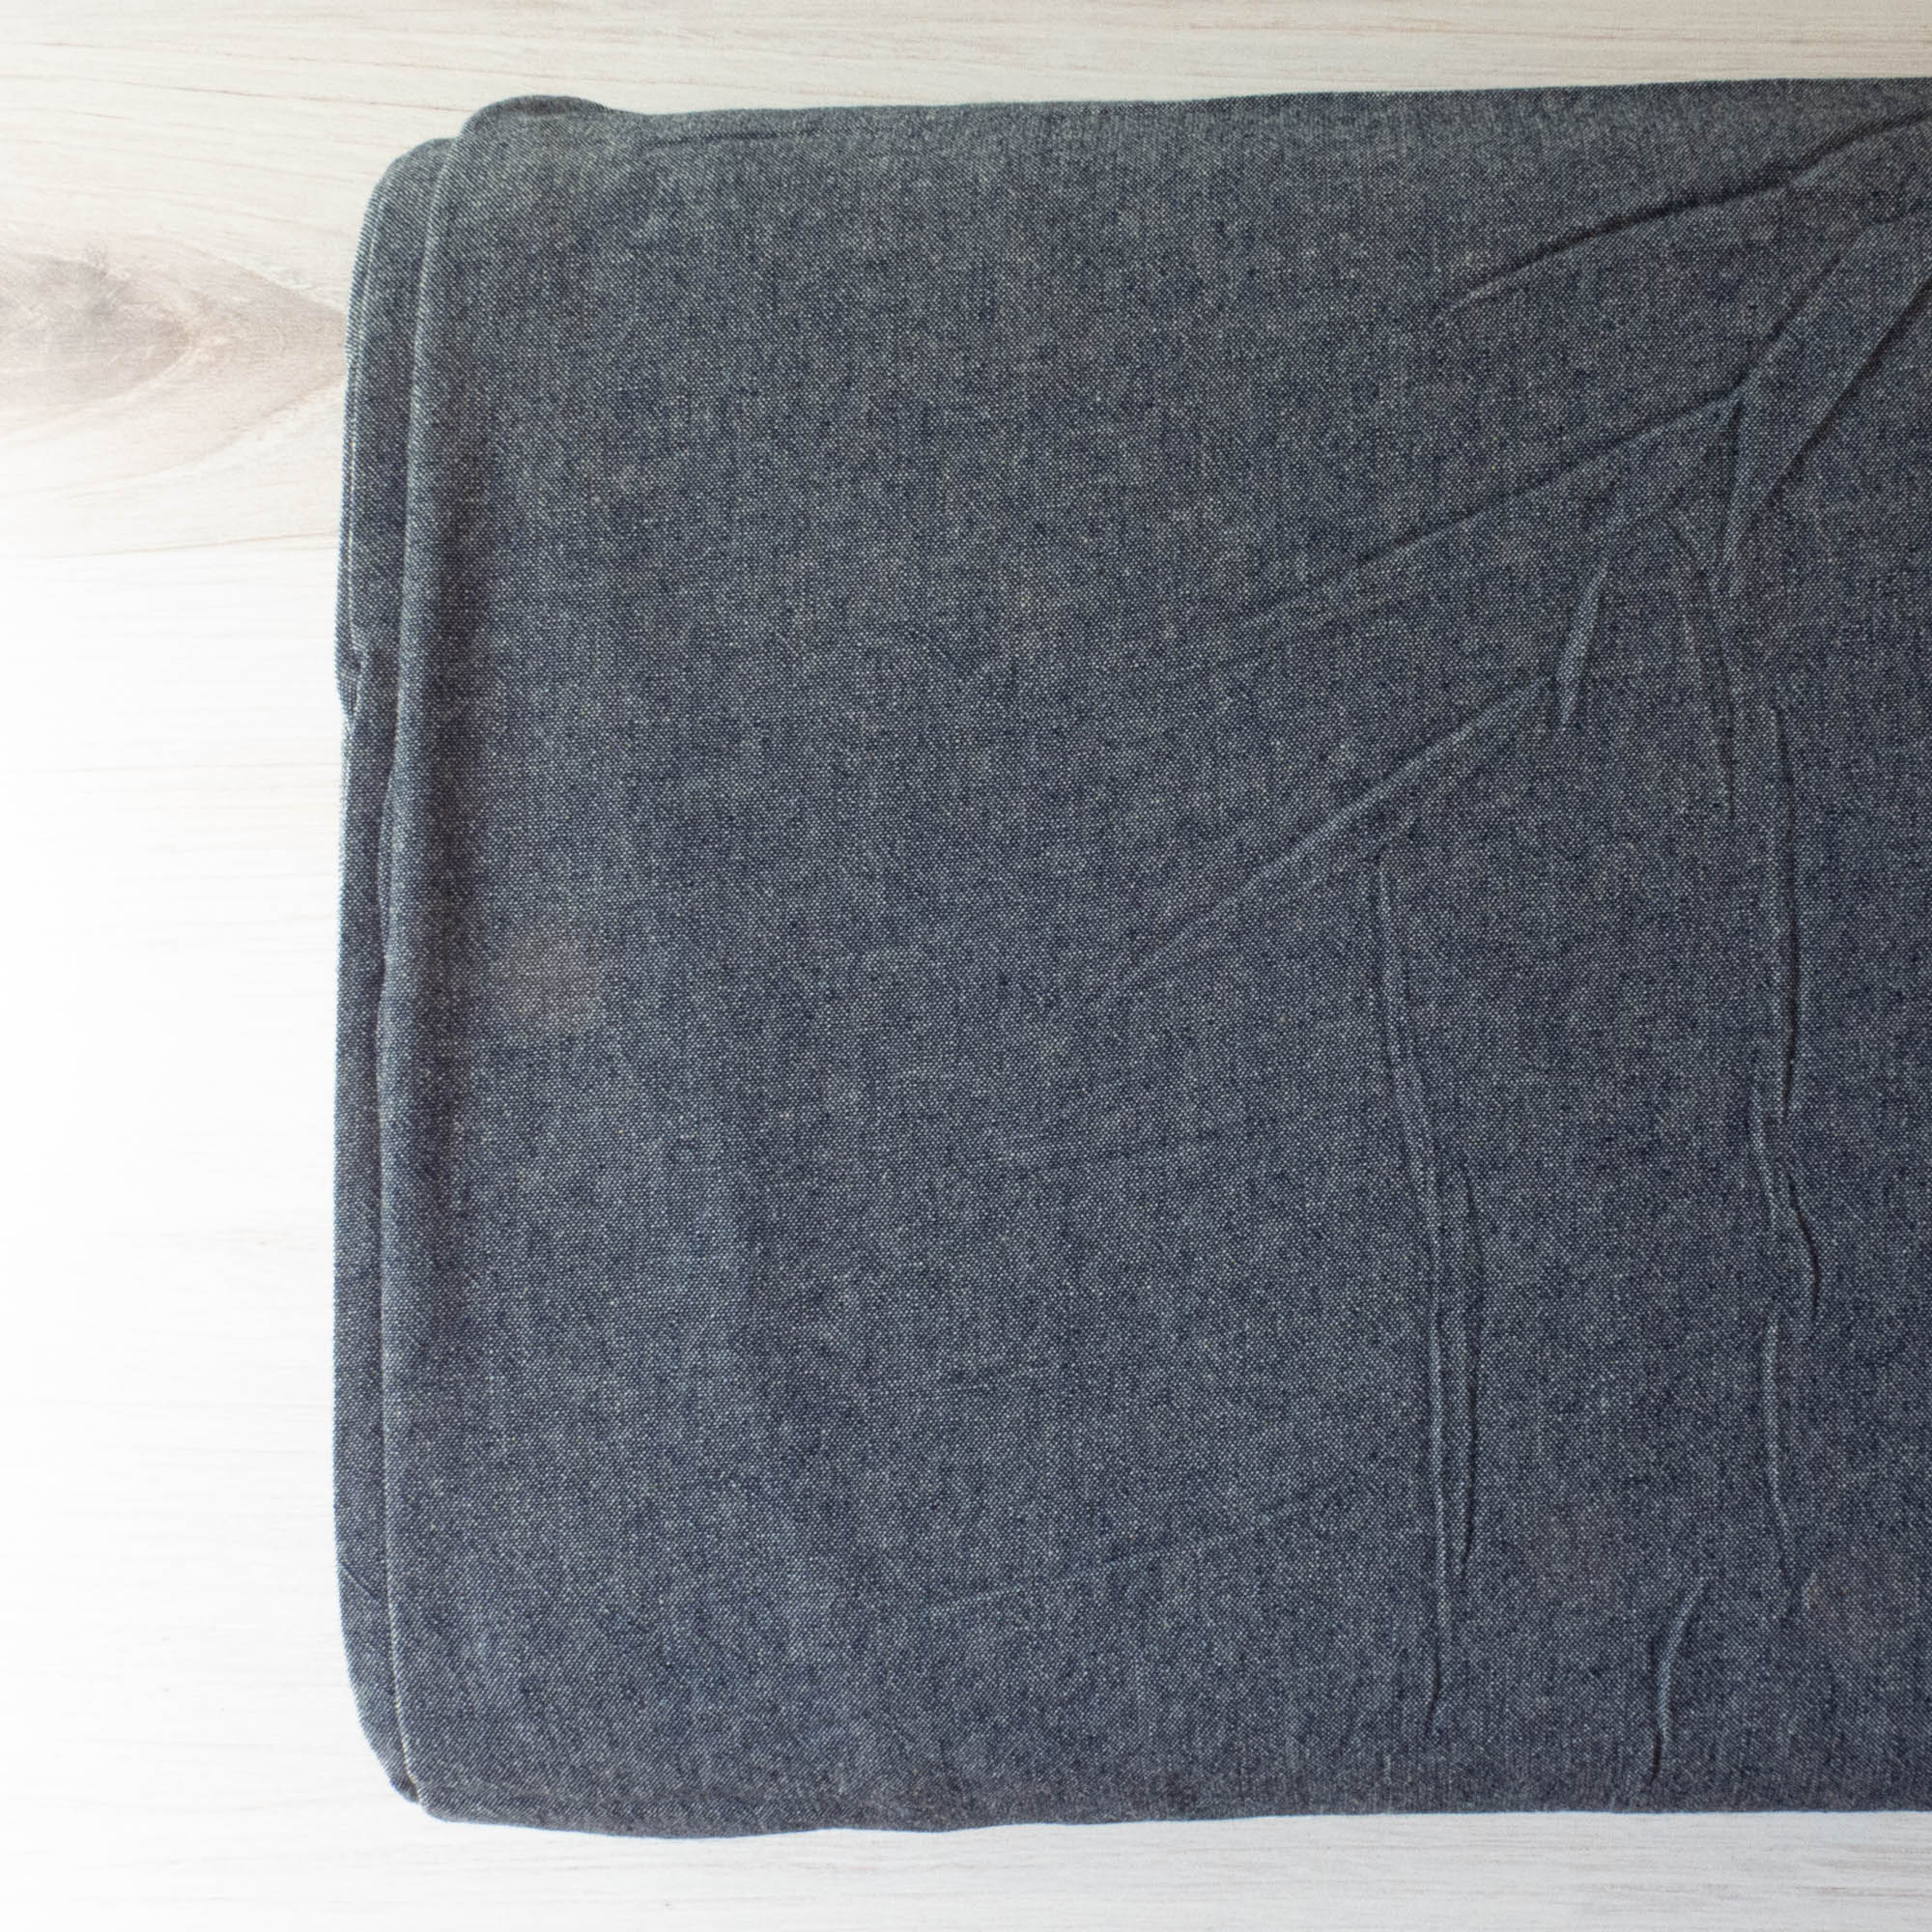 Indigo Washed Chambray Fabric (4.5 oz) – Snuggly Monkey